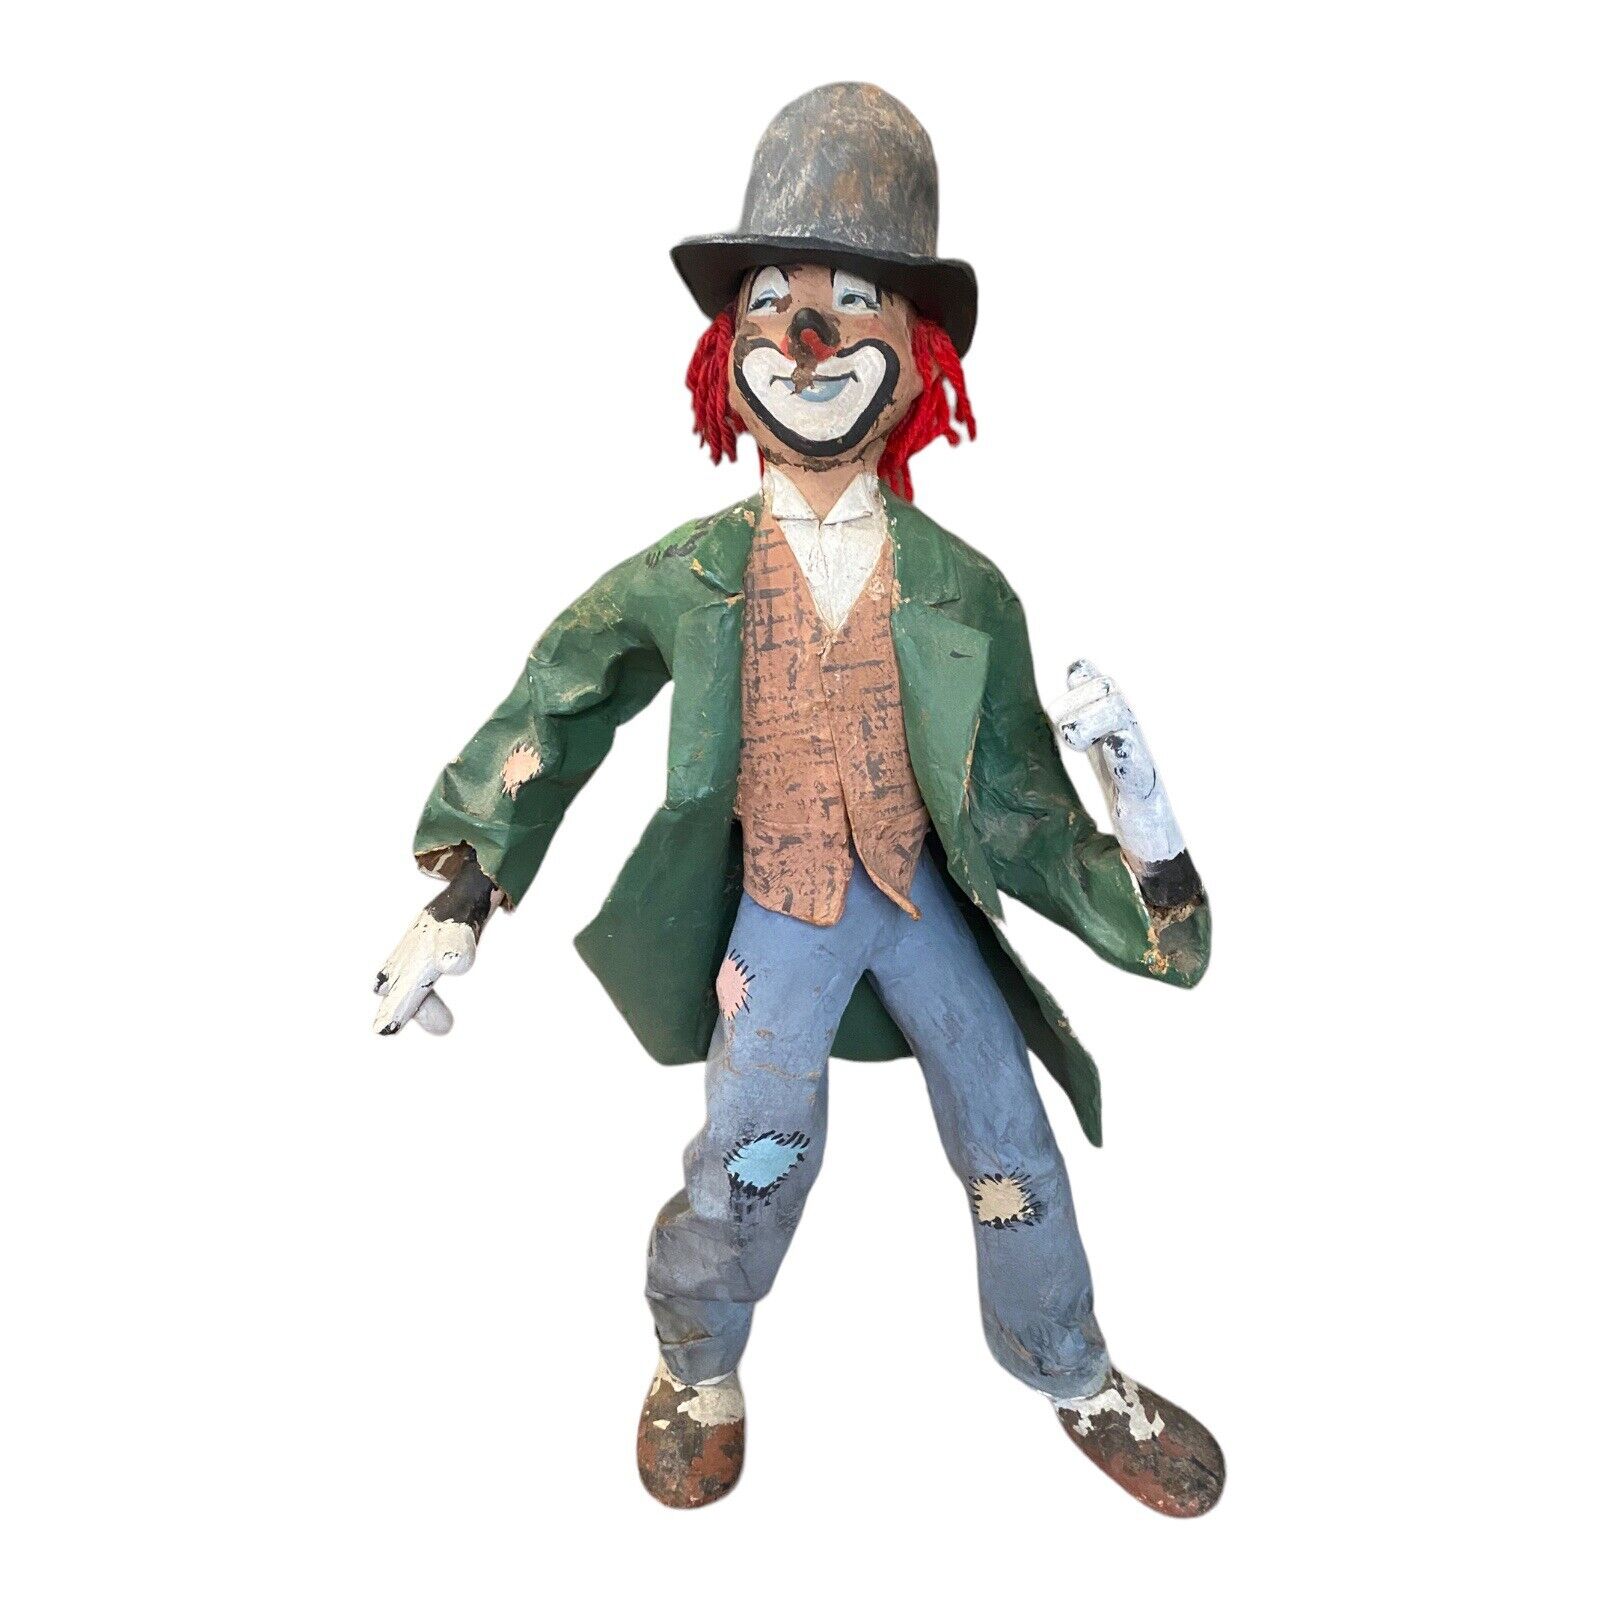 VTG Large Paper Mache Creepy Clown 26” Standing Hobo Statue Handmade Folk Art